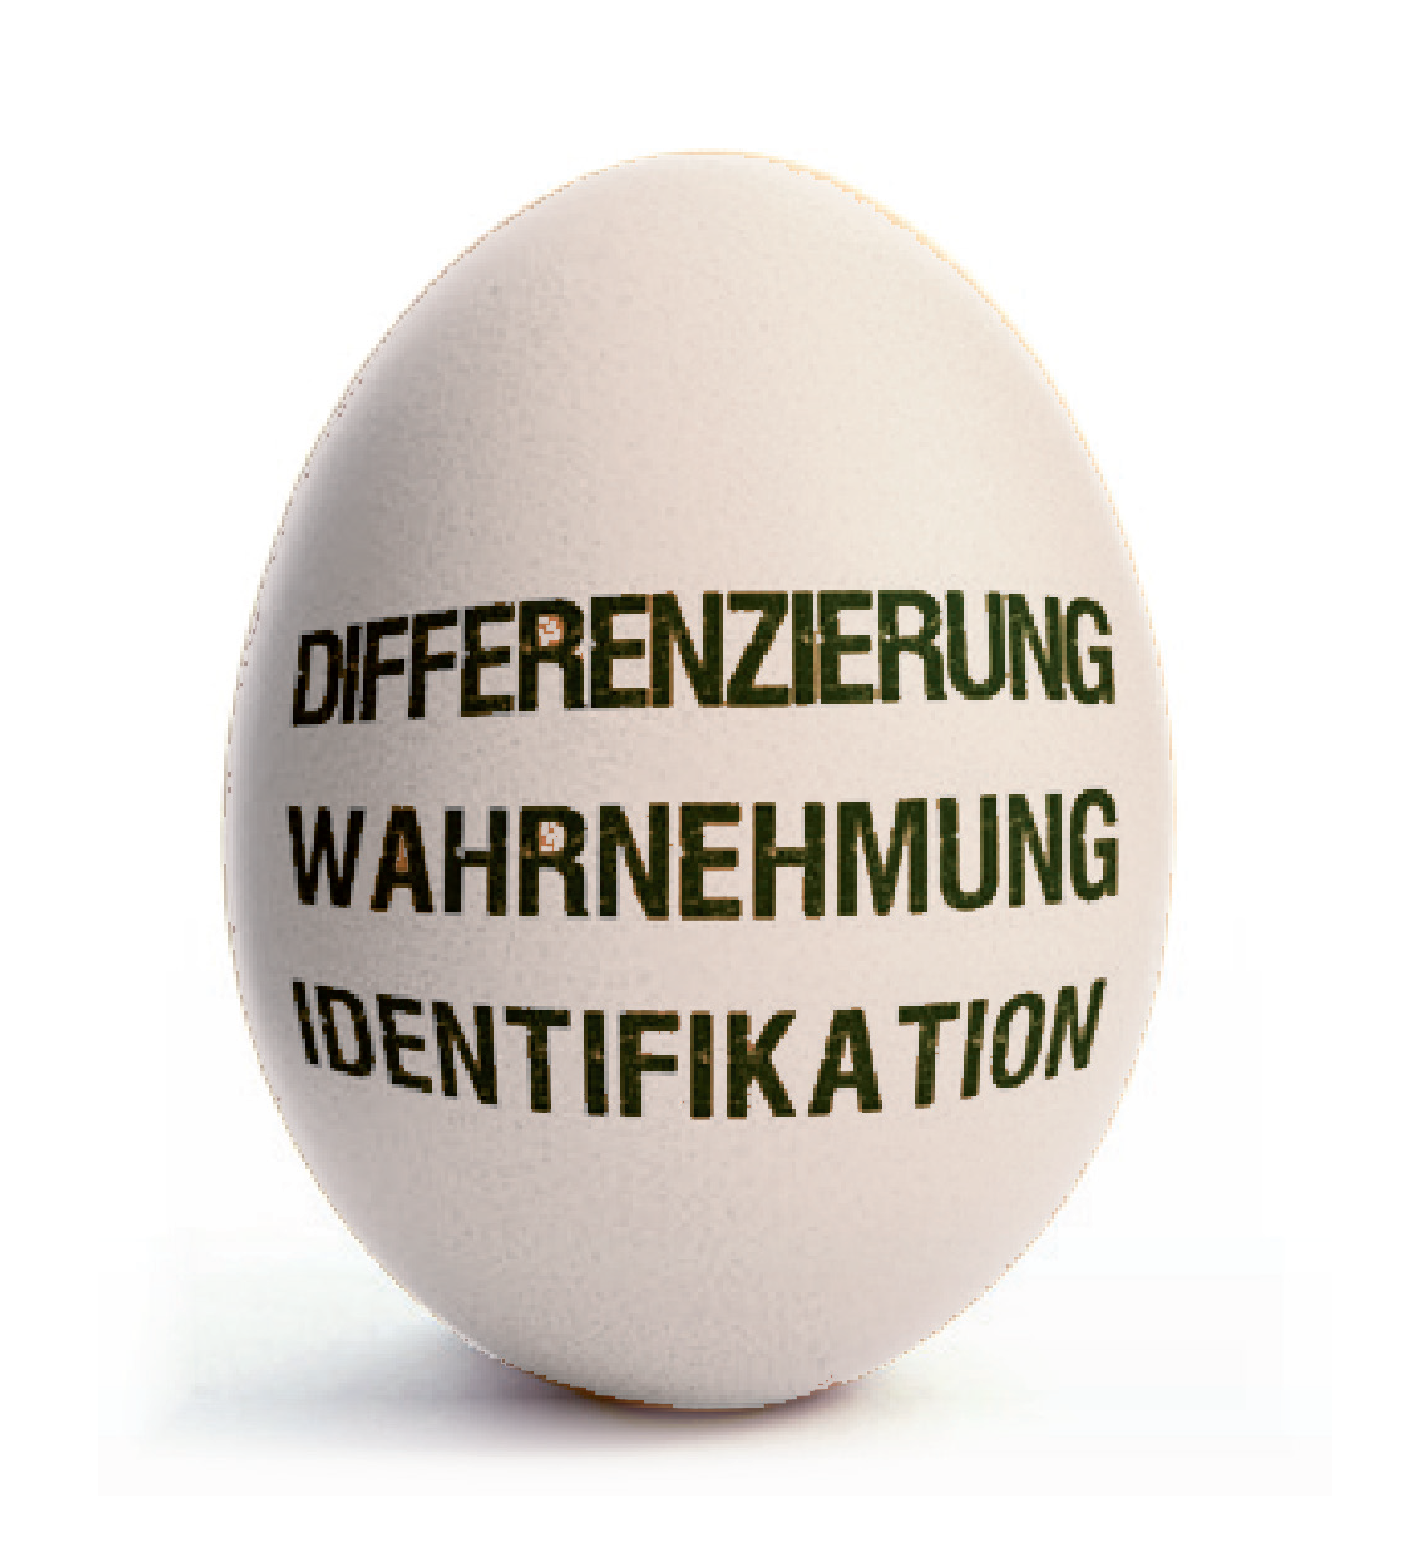 Ei_Differenzierung_Wahrnehmung_Identifikation-02-02.png